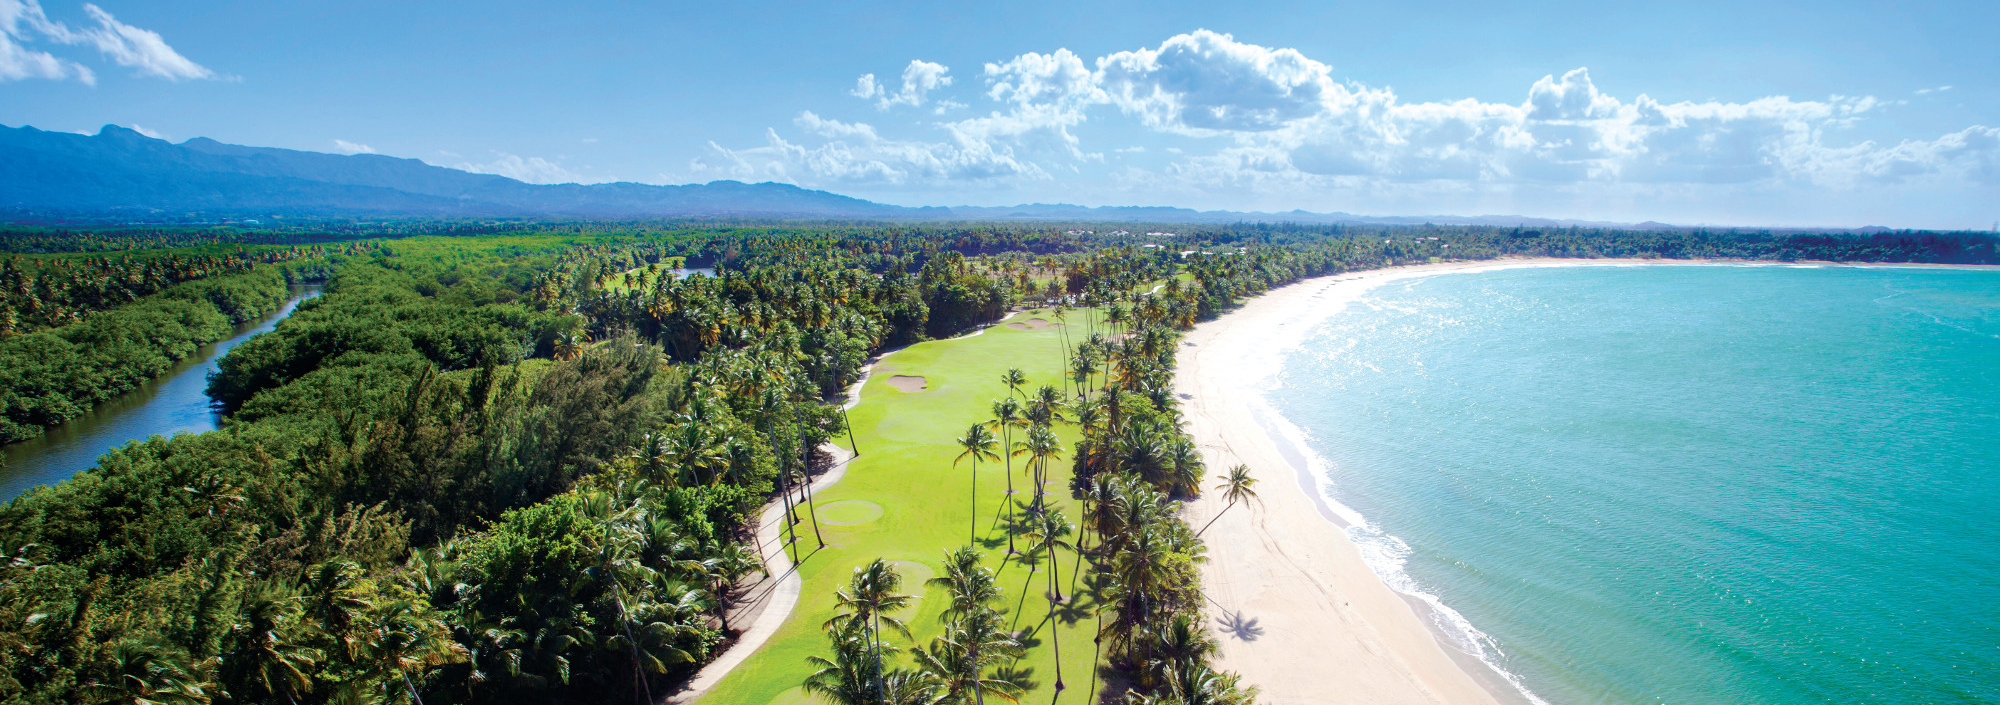 Blick über die Küste Puerto Ricos mit weißem Strand, Palmen, Golfplatz und grünen Bergen im Hintergrund